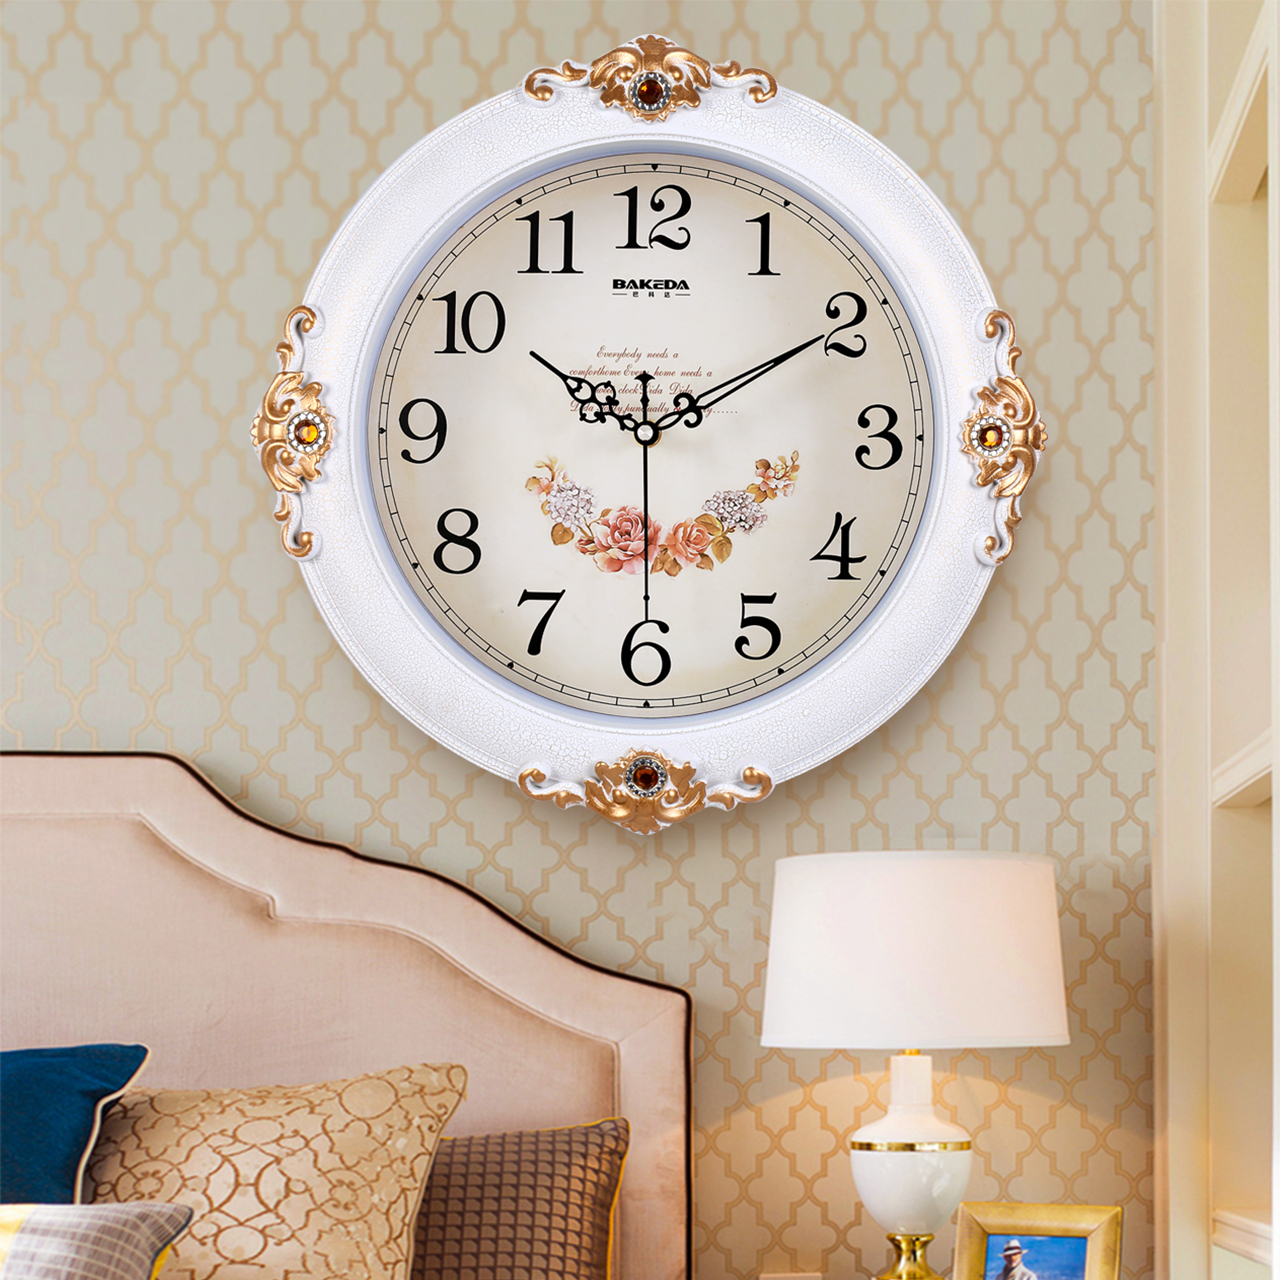 客厅静音挂钟家用创意时钟时尚个性田园钟表欧式挂表卧室石英钟表